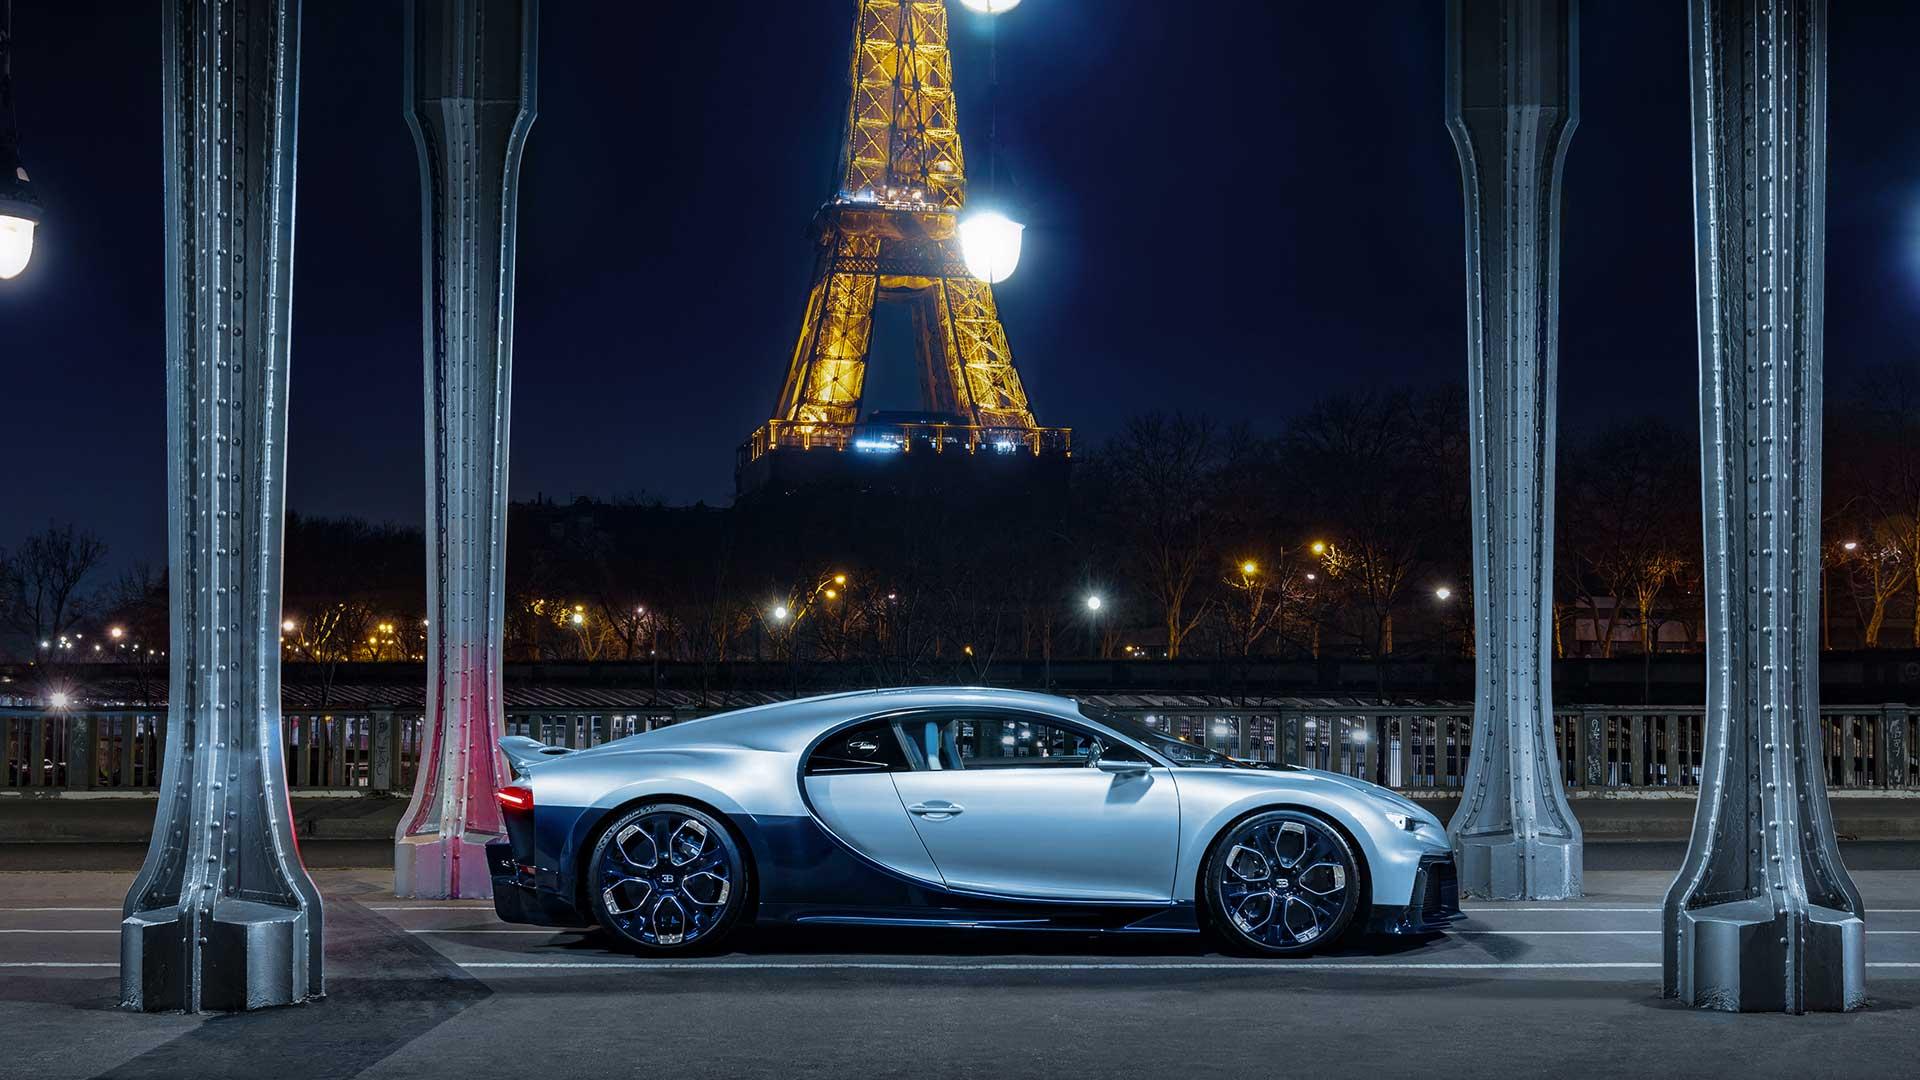 Bugatti Chron Profilee in Parijs bij de Eiffeltoren